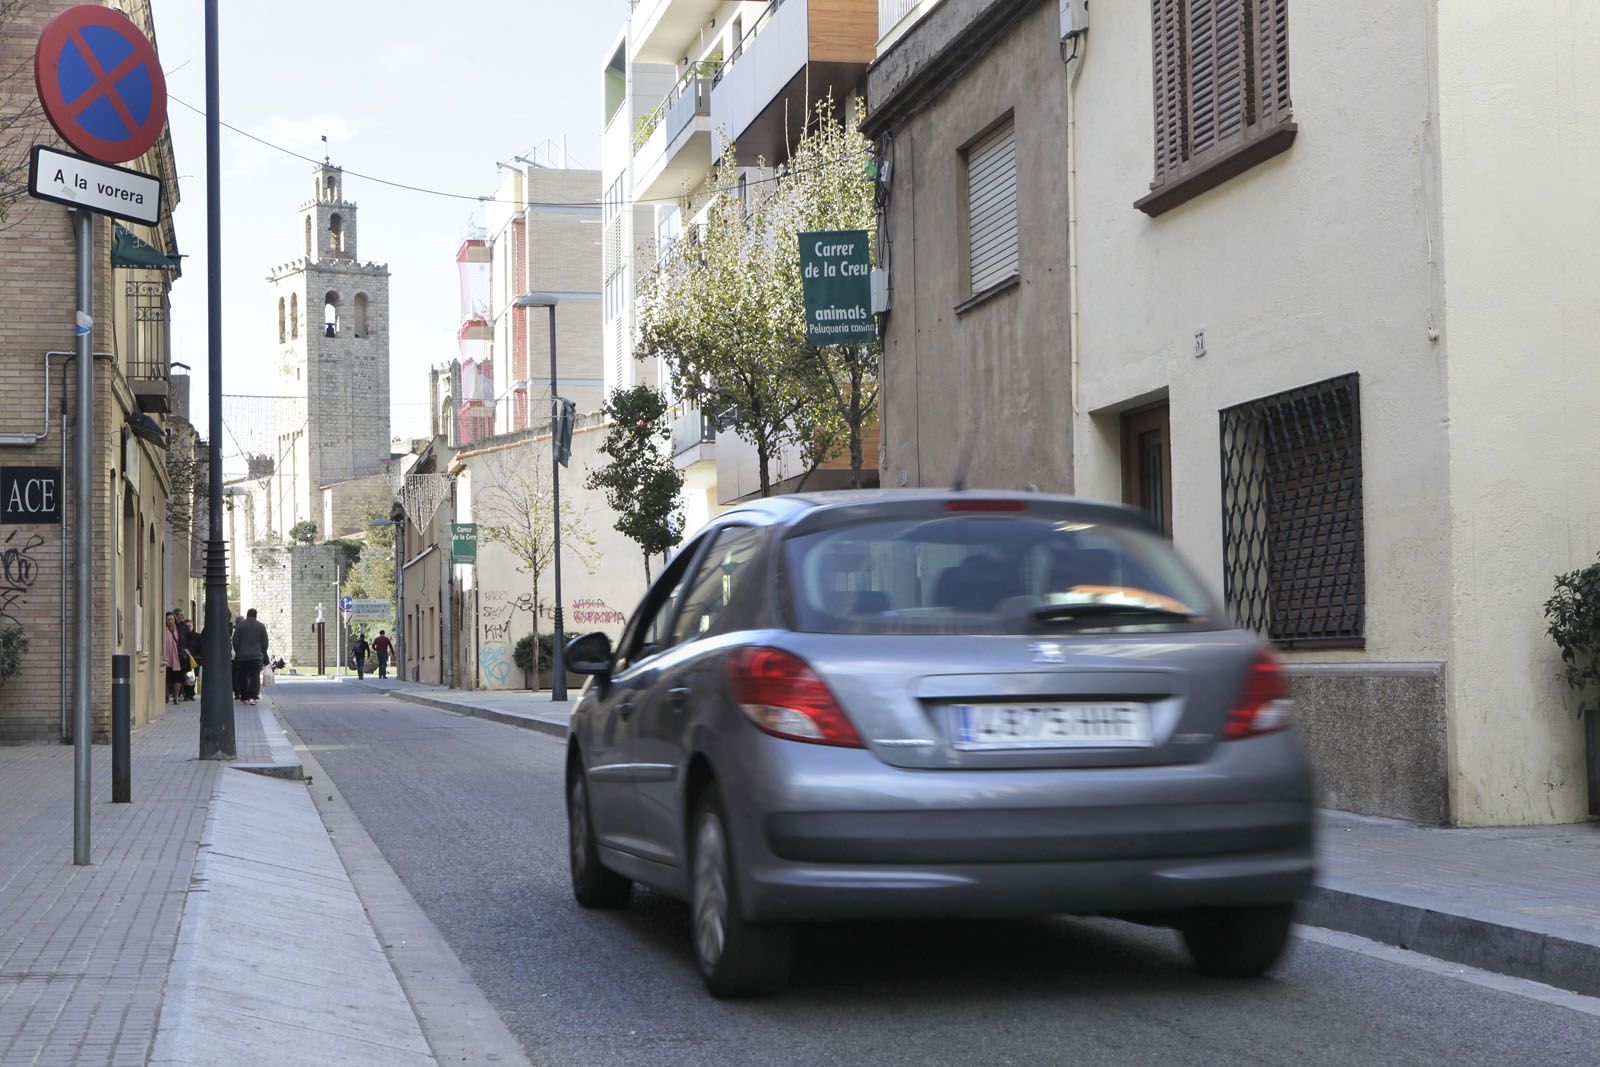 El carrer de la Creu és un dels que es vianantitzarà a Sant Cugat FOTO: Artur Ribera